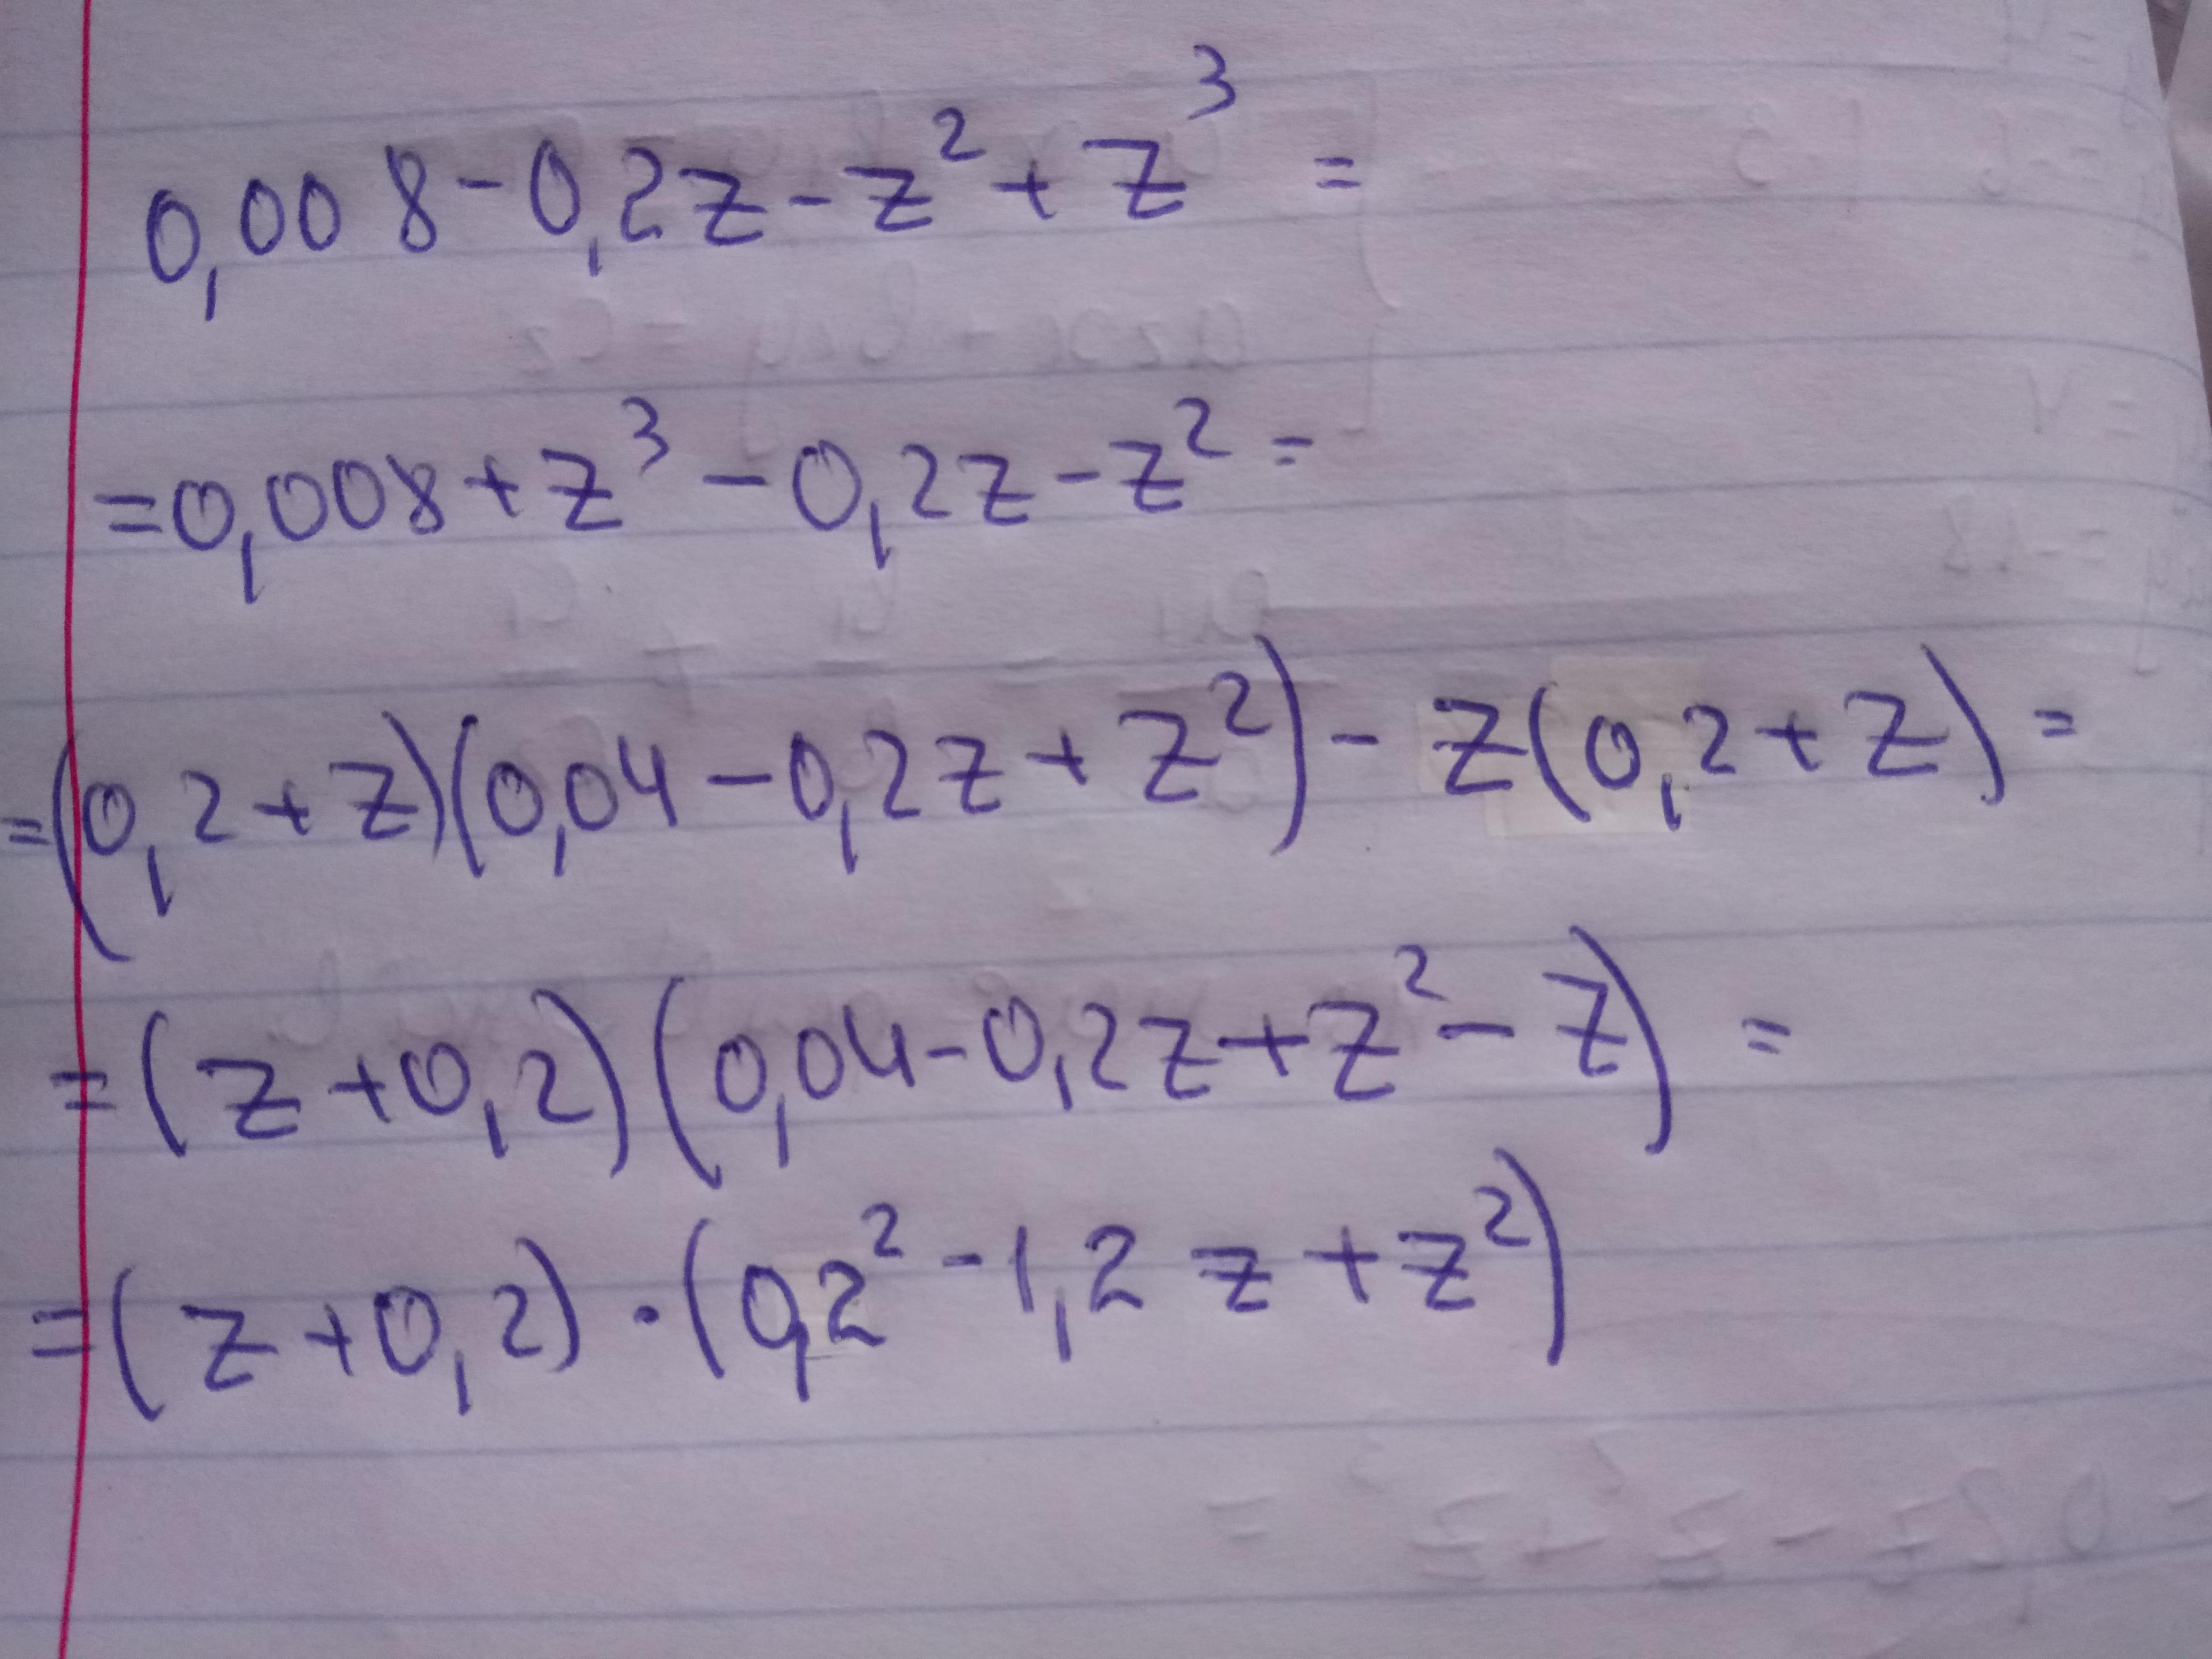 Z1 z2 z3. Разложить на множители 0.001-0.1z-z2+z3. Разложи на множители 5z^2 - 10zy + 5y^2. Разложи на множители 0,001−0,1z−z2+z3.. Разложи на множители 0 6 z2.